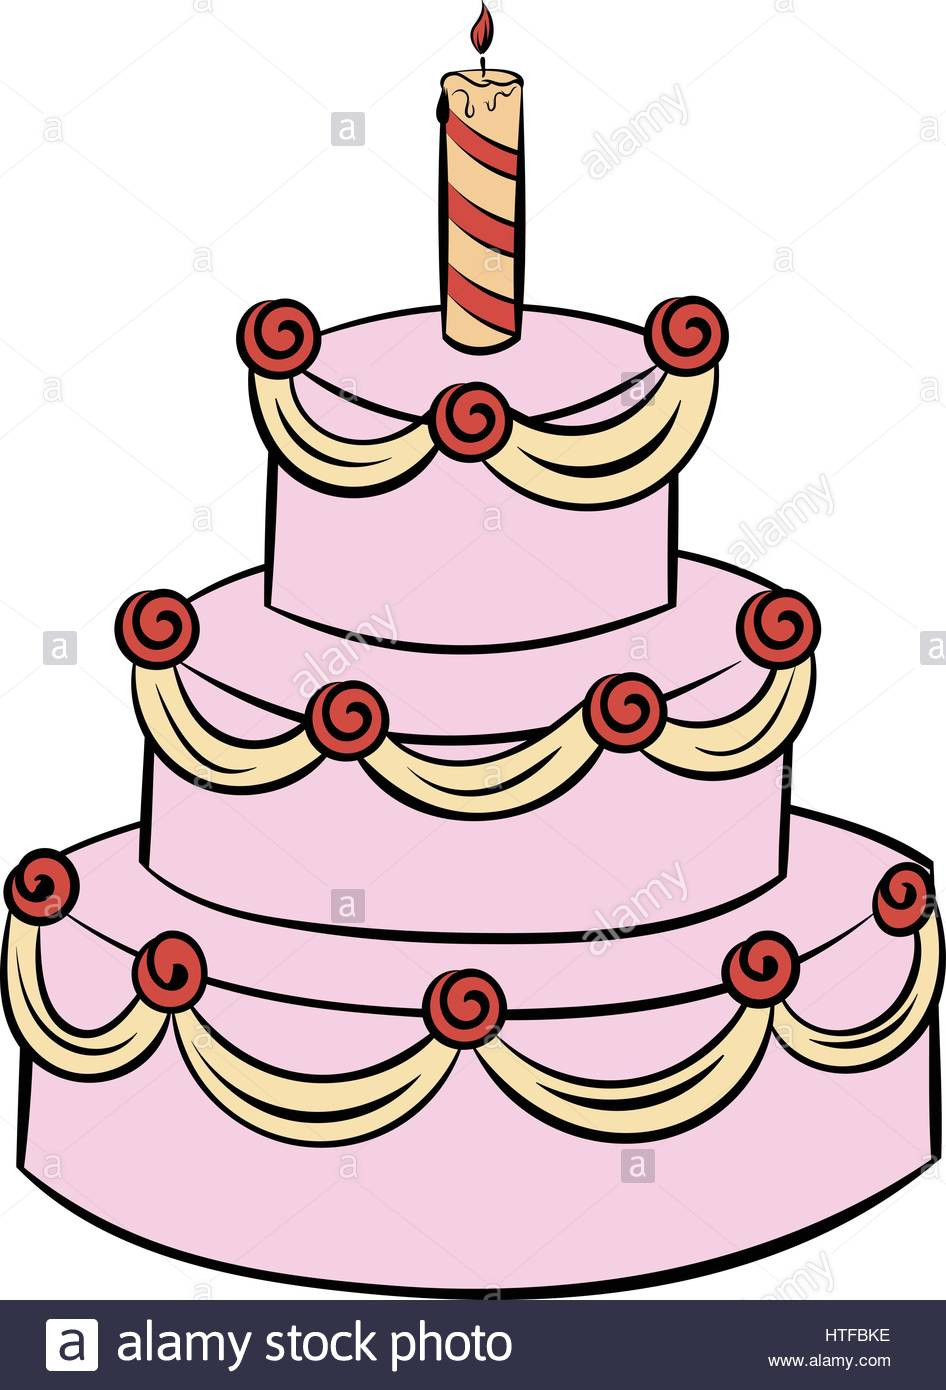 Geburtstagskuchen Mit Kerzen Comic
 Geburtstagskuchen Mit Kerzen ic – Kuchen Bild Idee